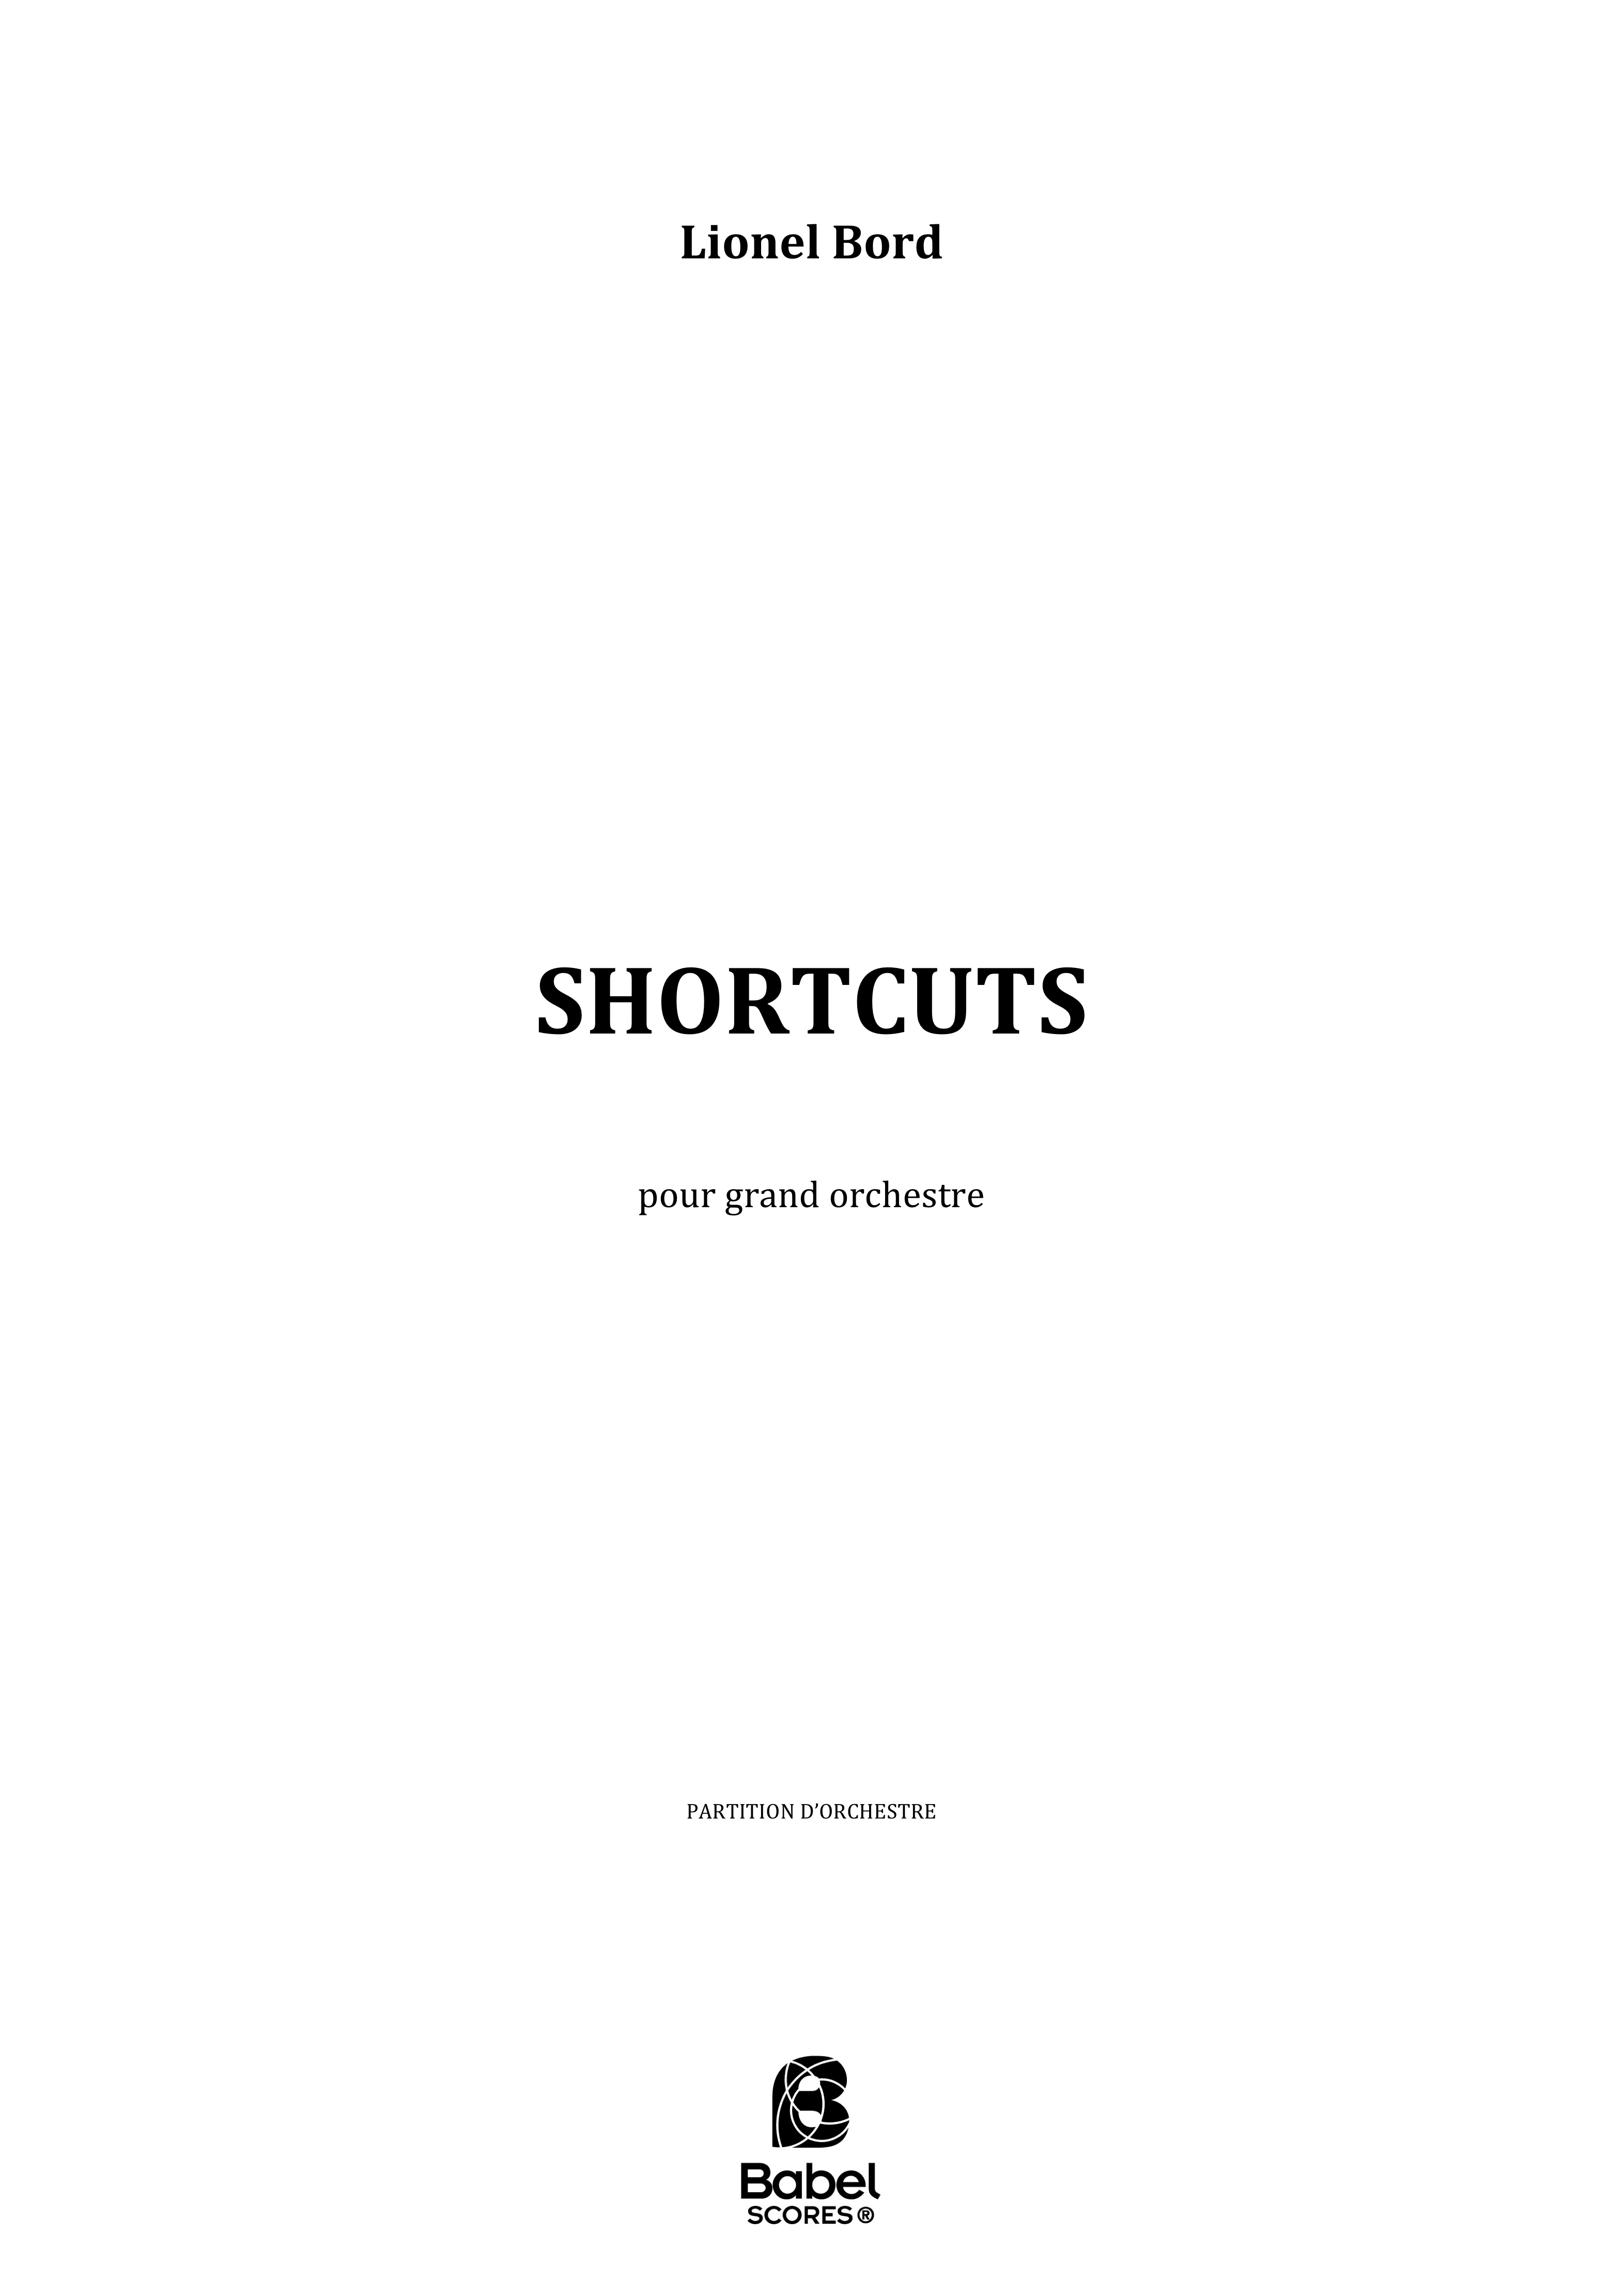 Shortcuts scoreA2 Babel z